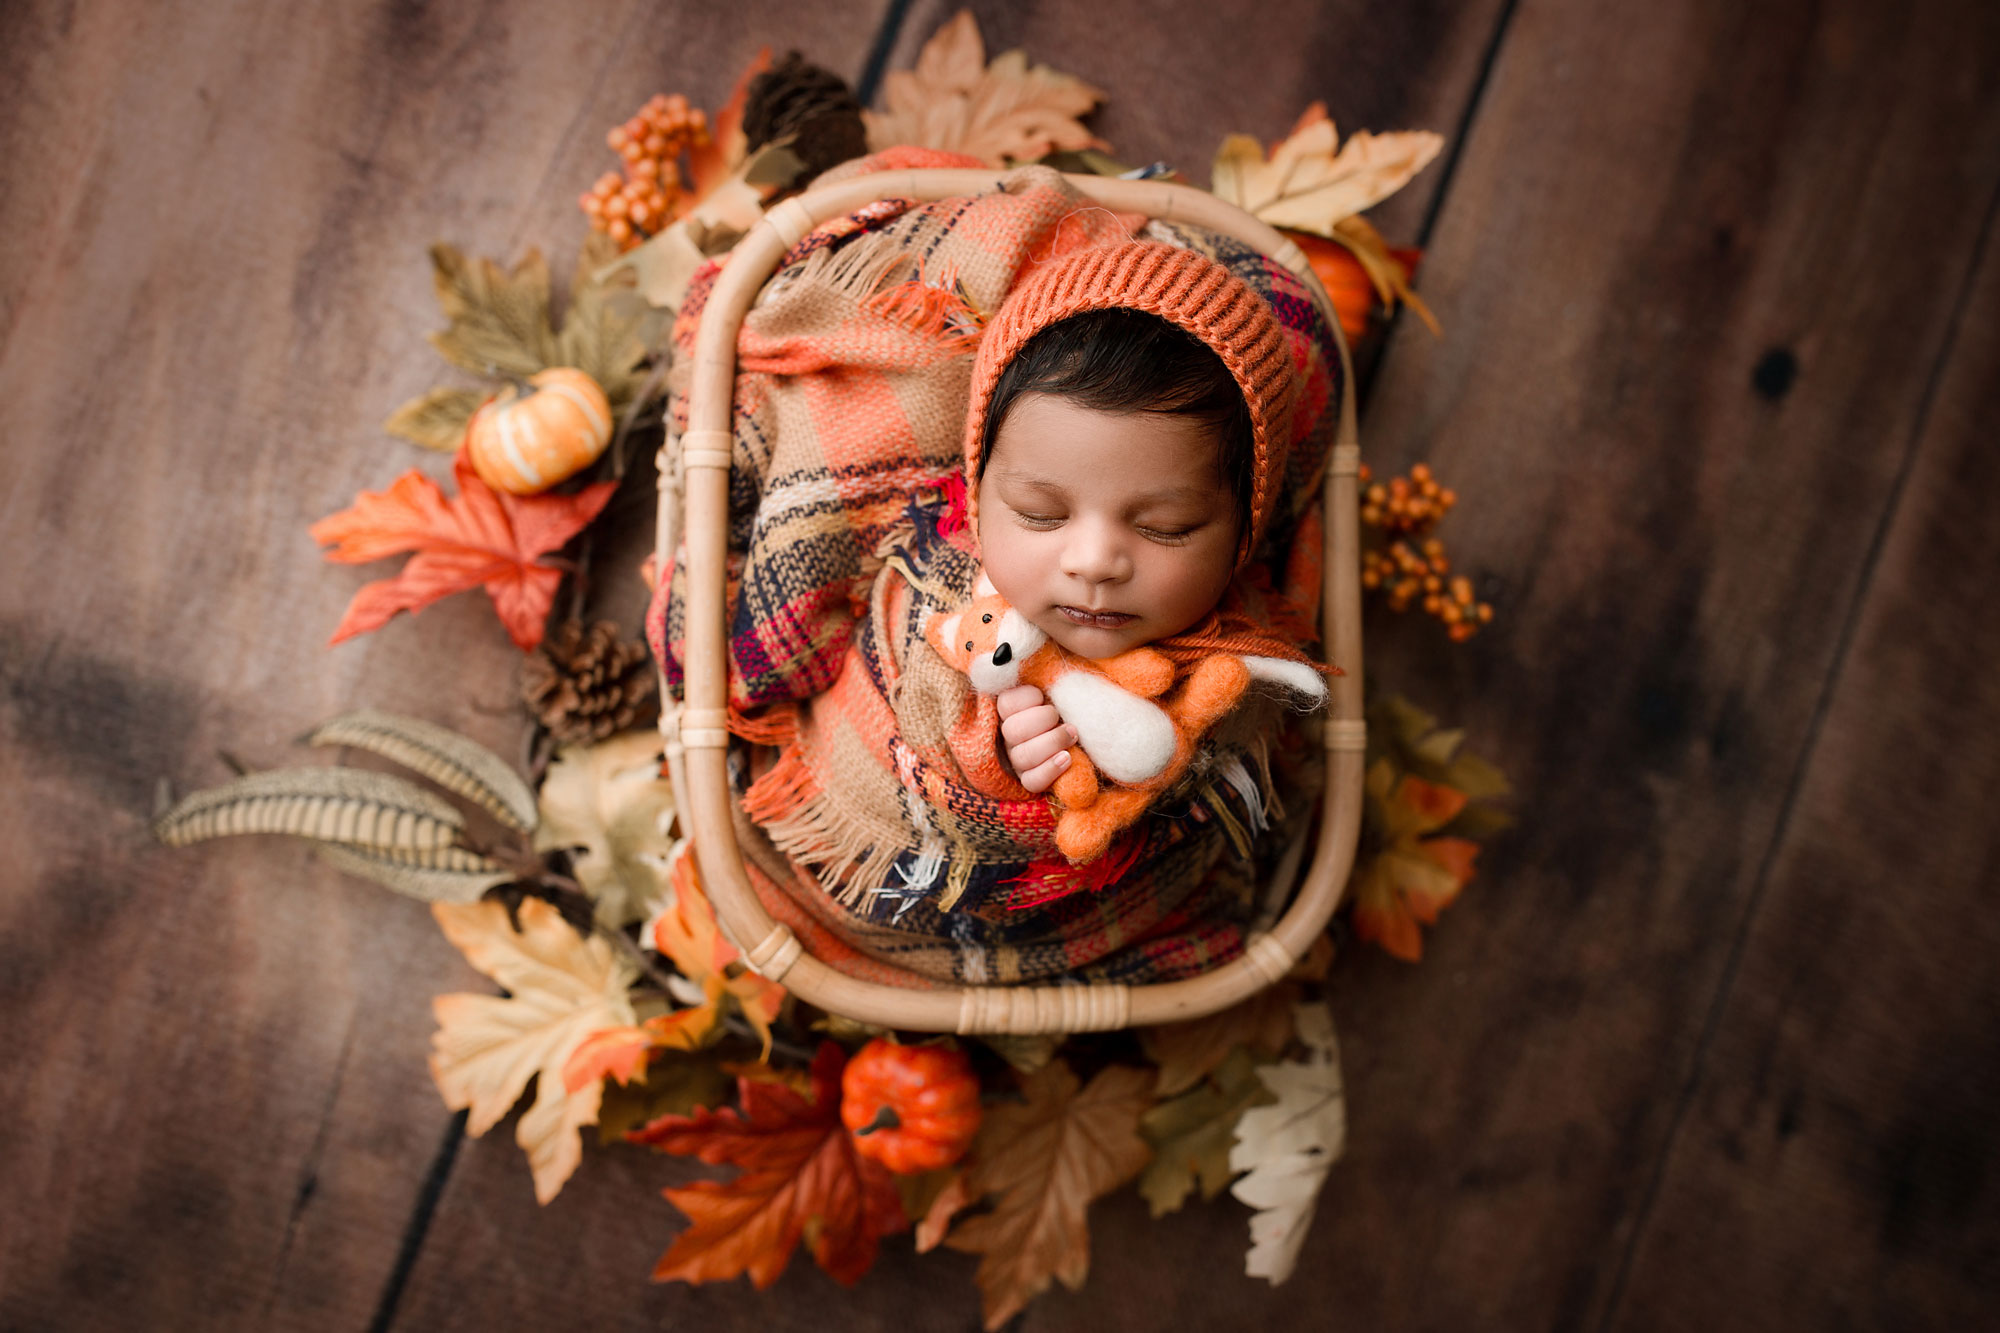 baby boy sleeping ia basket with orange bonnet 